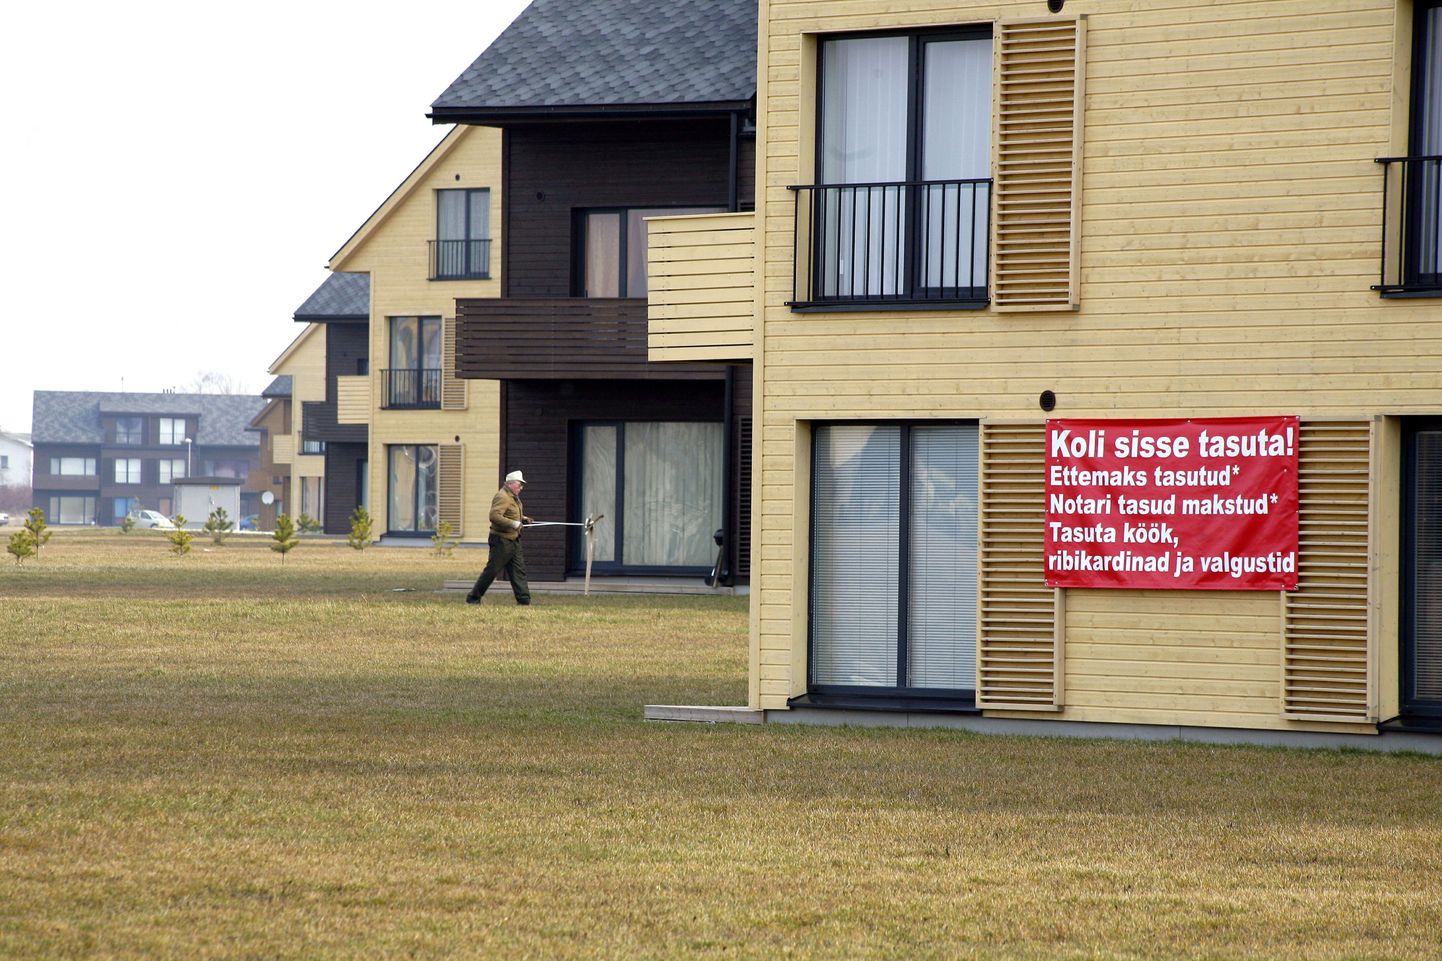 Застройщики пытаются привлечь покупателей недвижимости низкими ценами и различными бонусами.